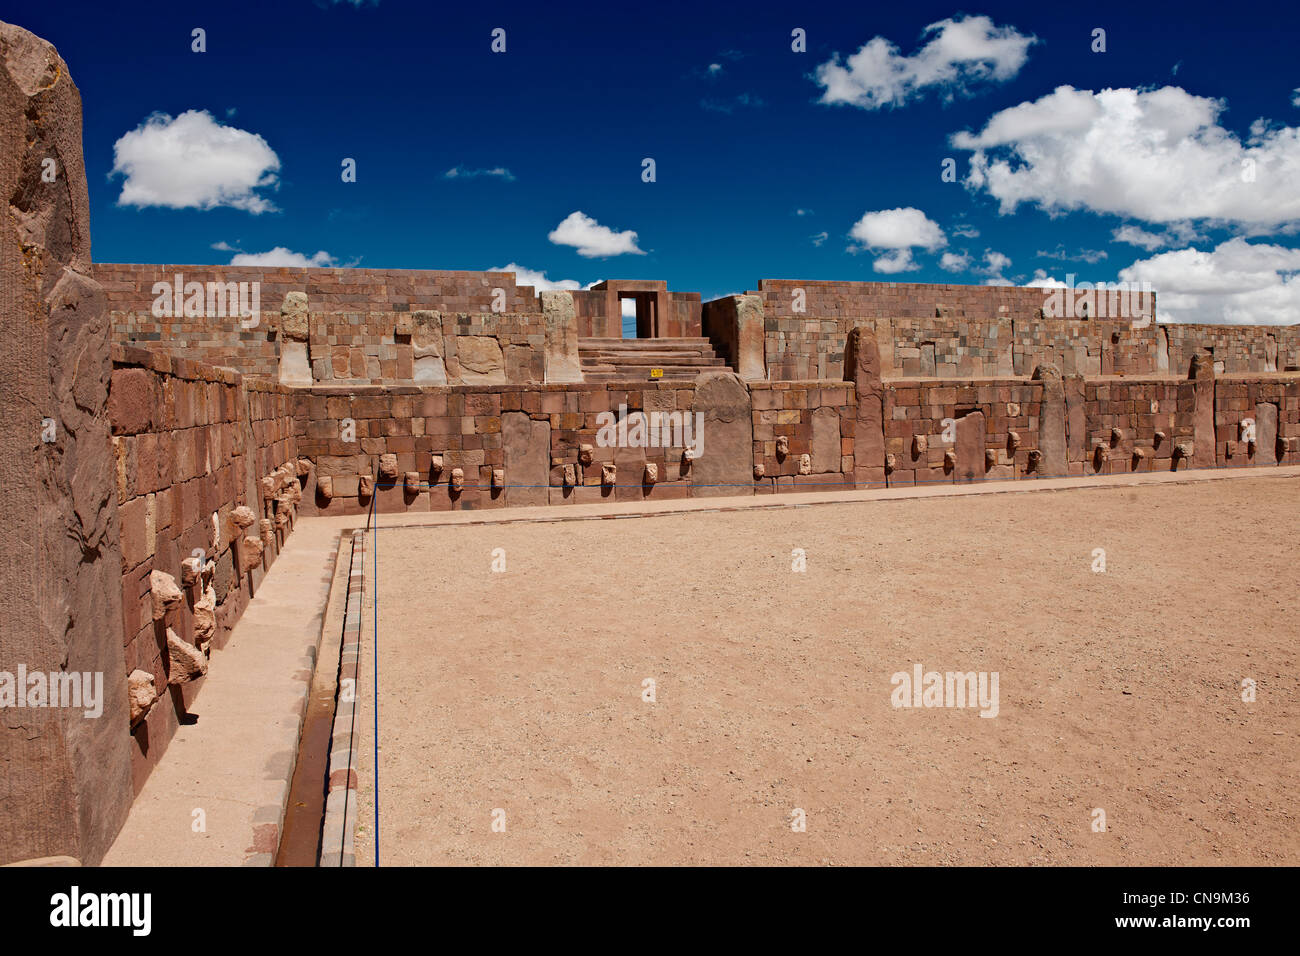 halb unterirdischen Tempel, Templete Semi-Subterraneo, Pre-Inka Standort Tiwanaku, UNESCO-Weltkulturerbe, La Paz, Bolivien, Süd A Stockfoto